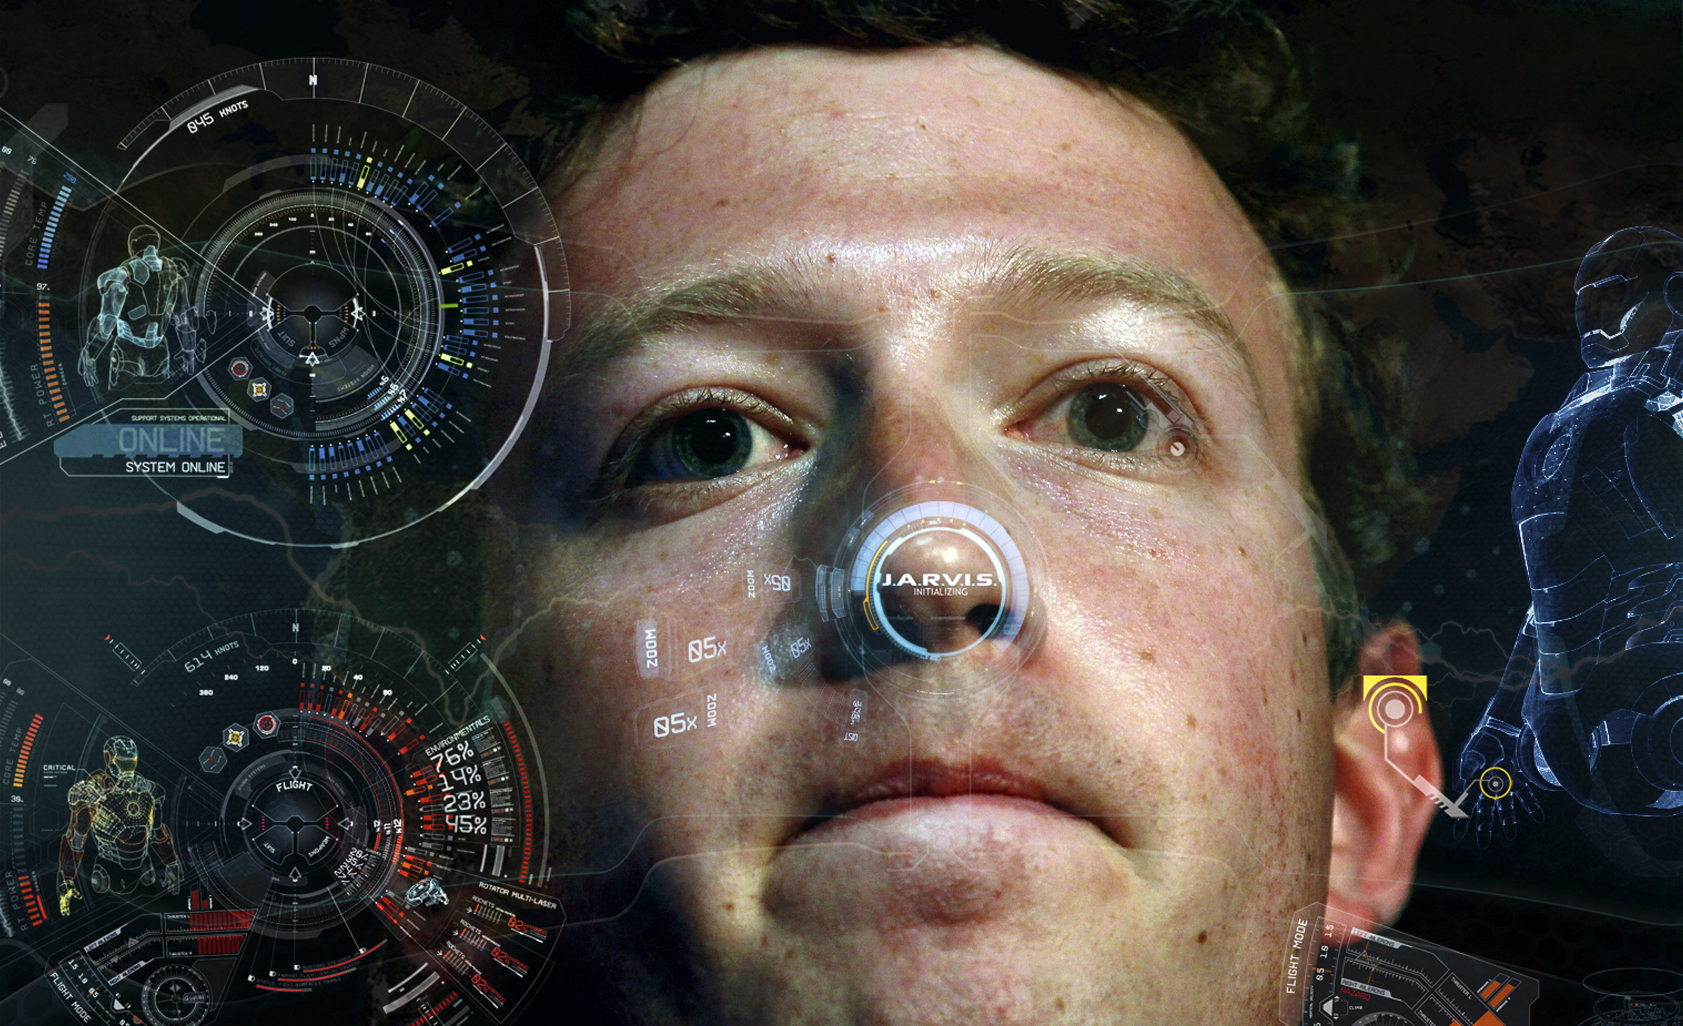 Không chọn người sắt “thật” làm Jarvis mà Mark Zuckerberg lại tìm đến “chúa trời” Morgan Freeman